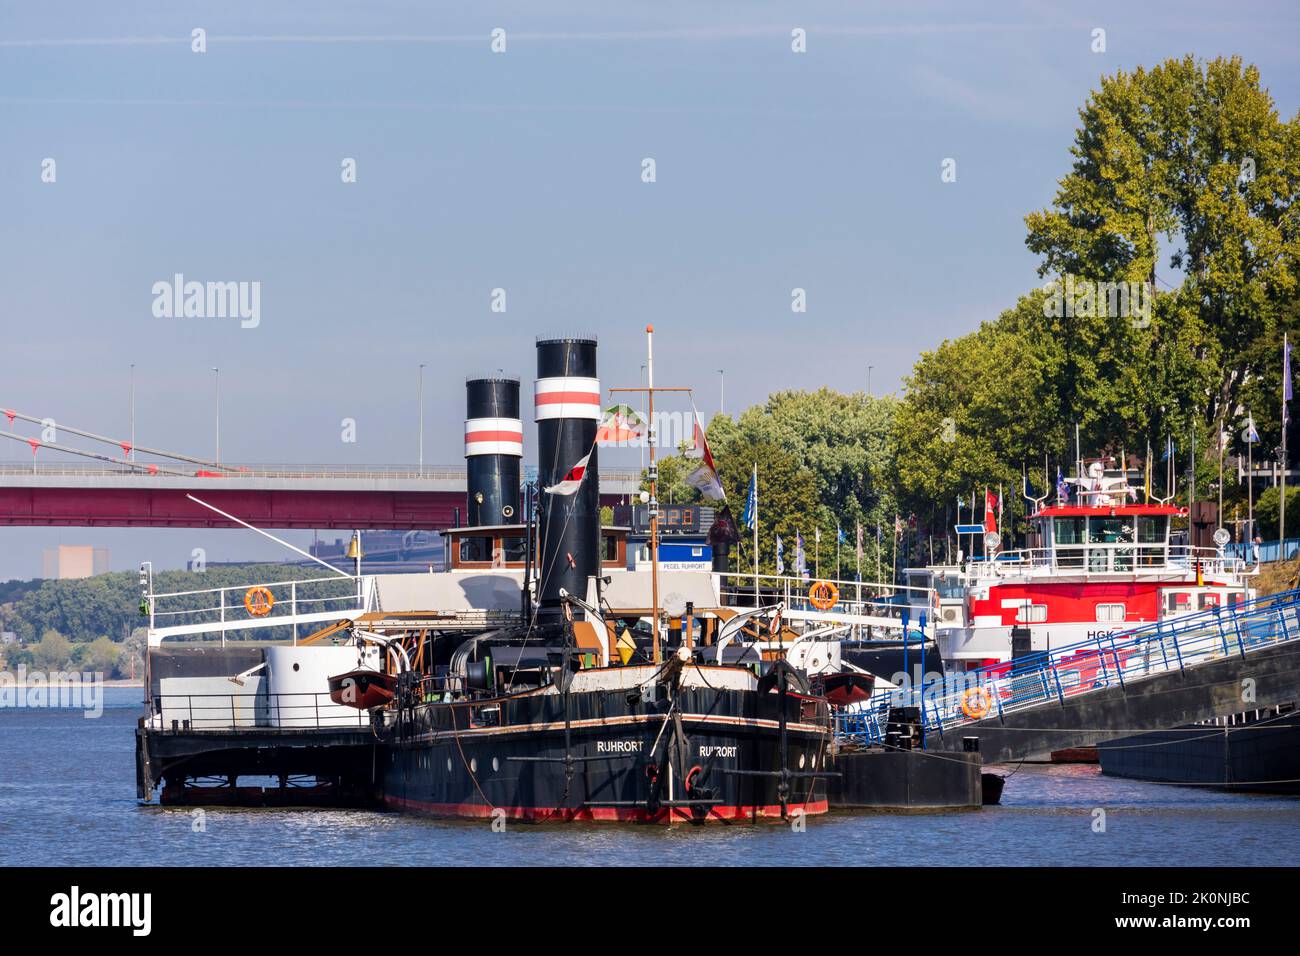 Canal Vinckekanal avec navire-musée Oscar Huber dans le port de Ruhrort, Duisburg, région de la Ruhr, Rhénanie-du-Nord-Westphalie, Allemagne, Europe Banque D'Images